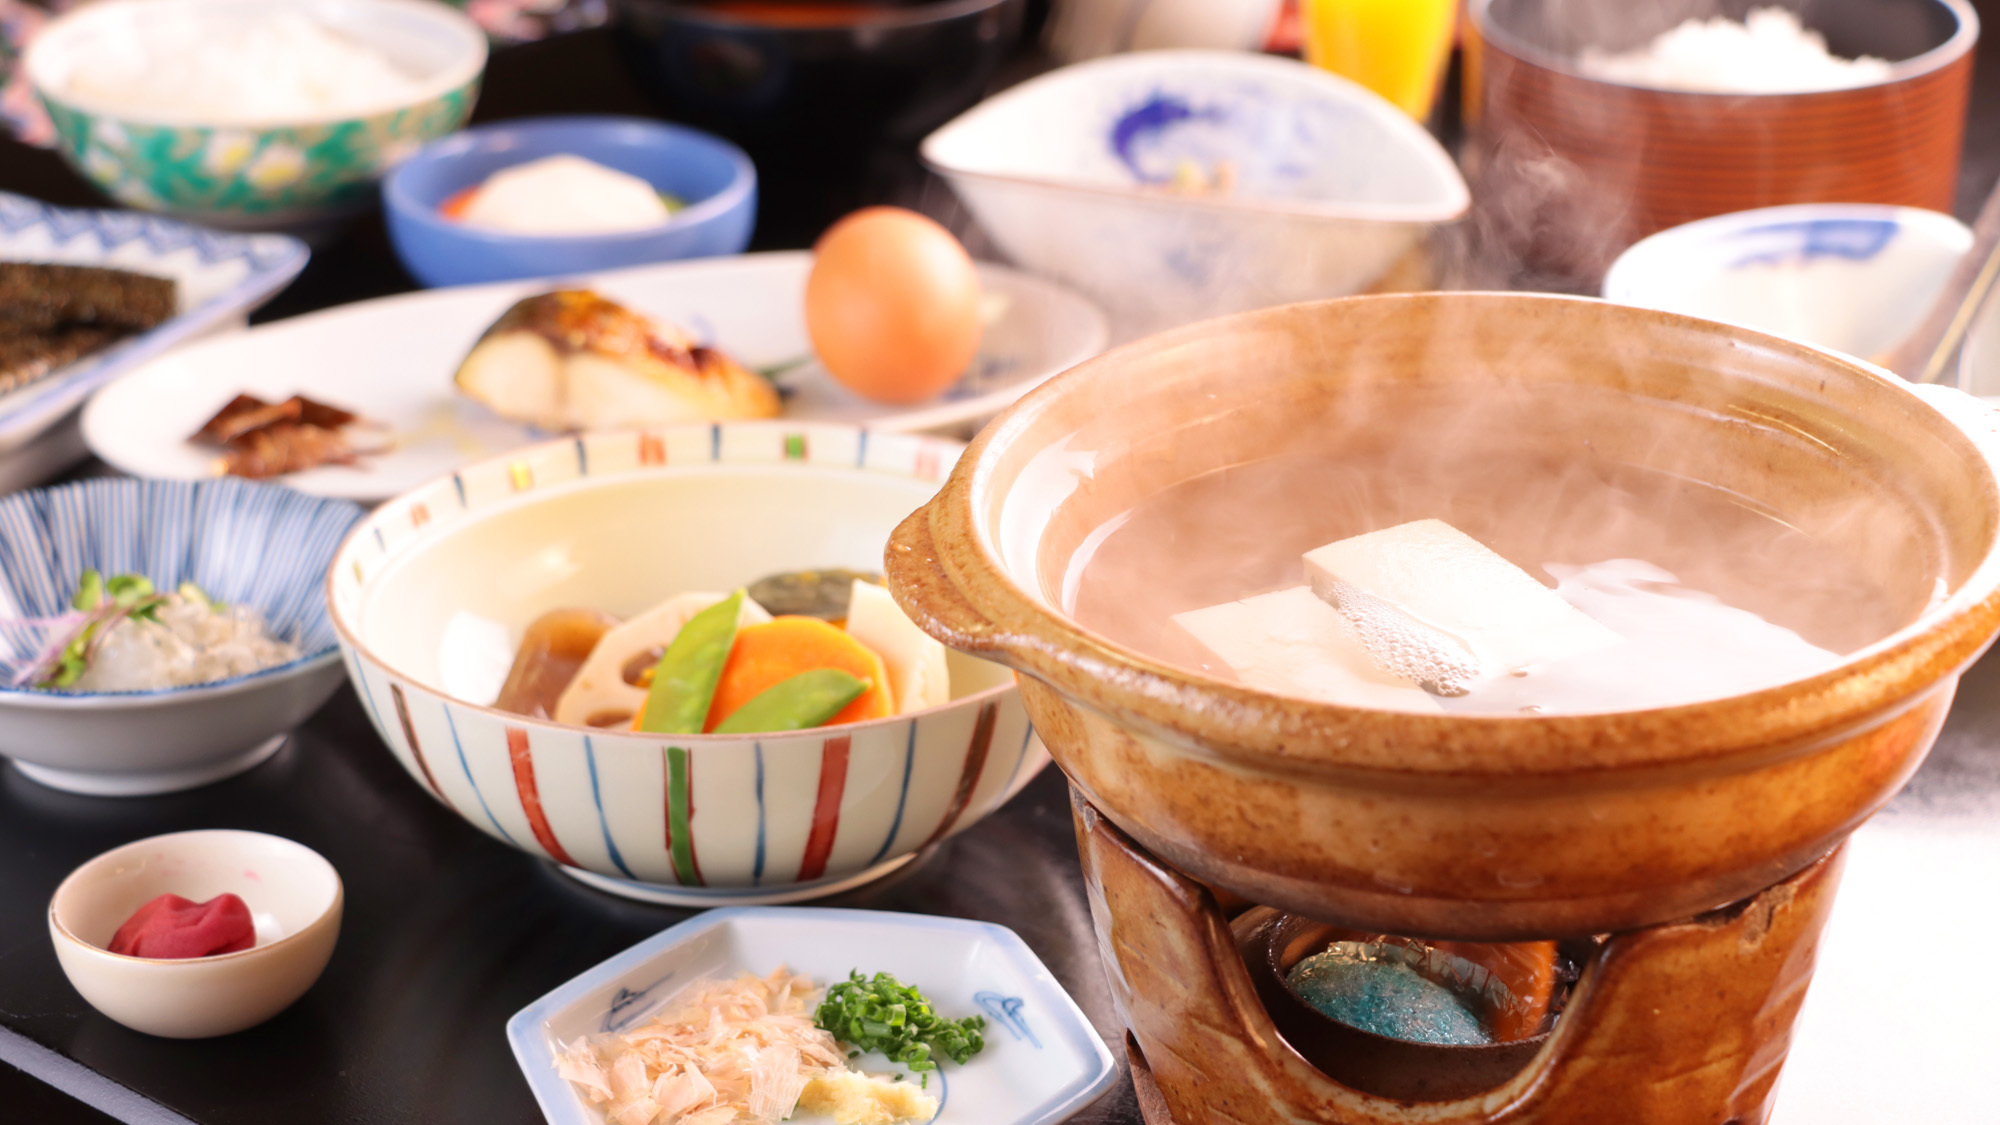 アツアツの湯豆腐をメインとした和朝食をご用意